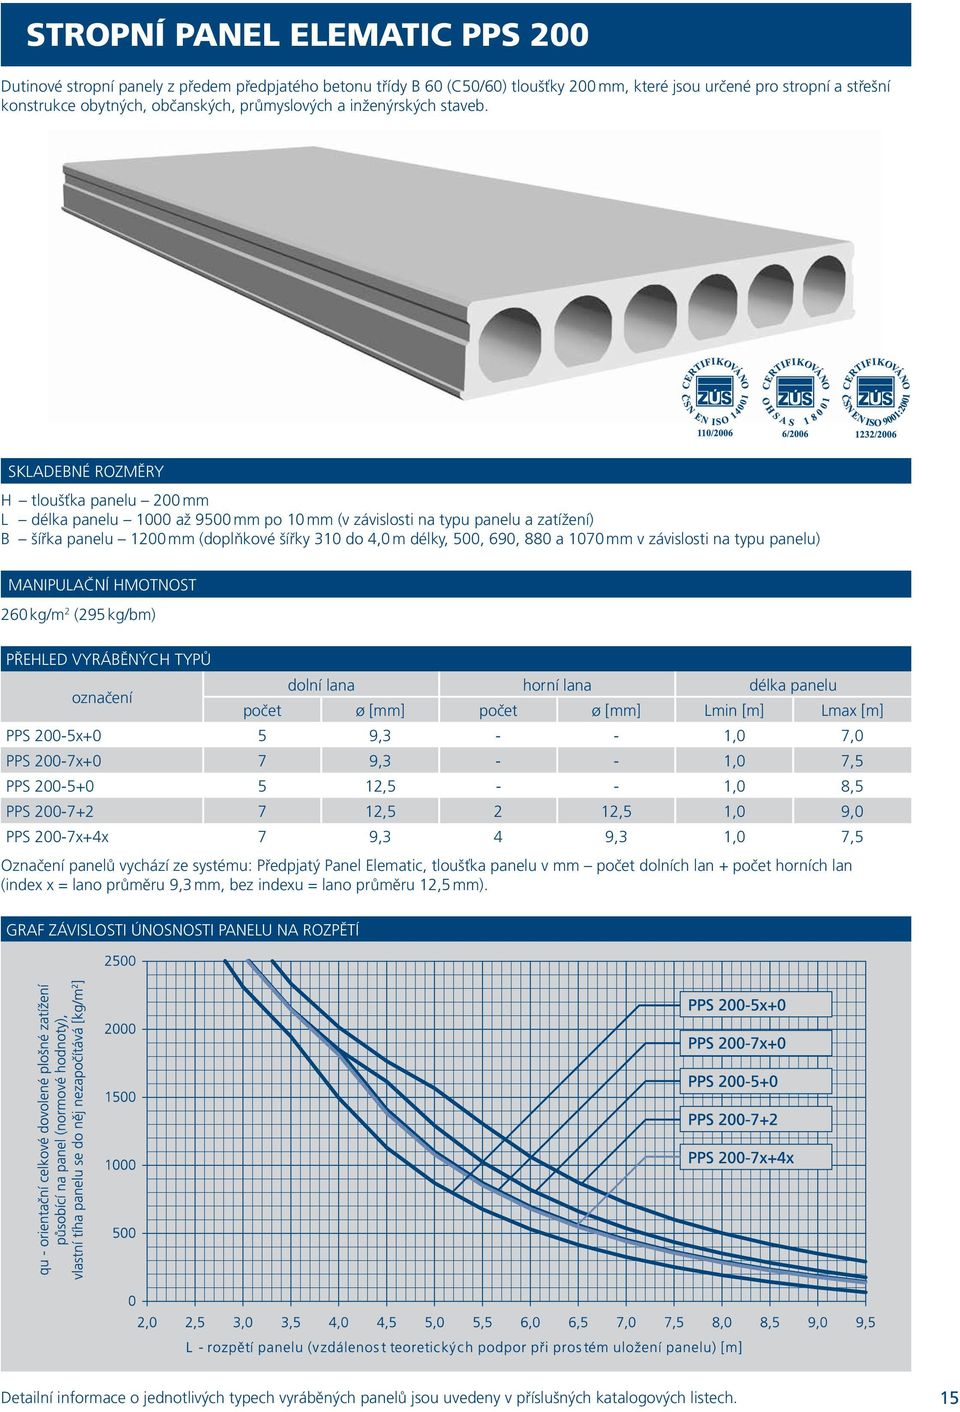 SKLADEBNÉ ROZMĚRY H tloušťka panelu 200 mm L délka panelu 1000 až 9500 mm po 10 mm (v závislosti na typu panelu a zatížení) B šířka panelu 1200 mm (doplňkové šířky 310 do 4,0 m délky, 500, 690, 880 a